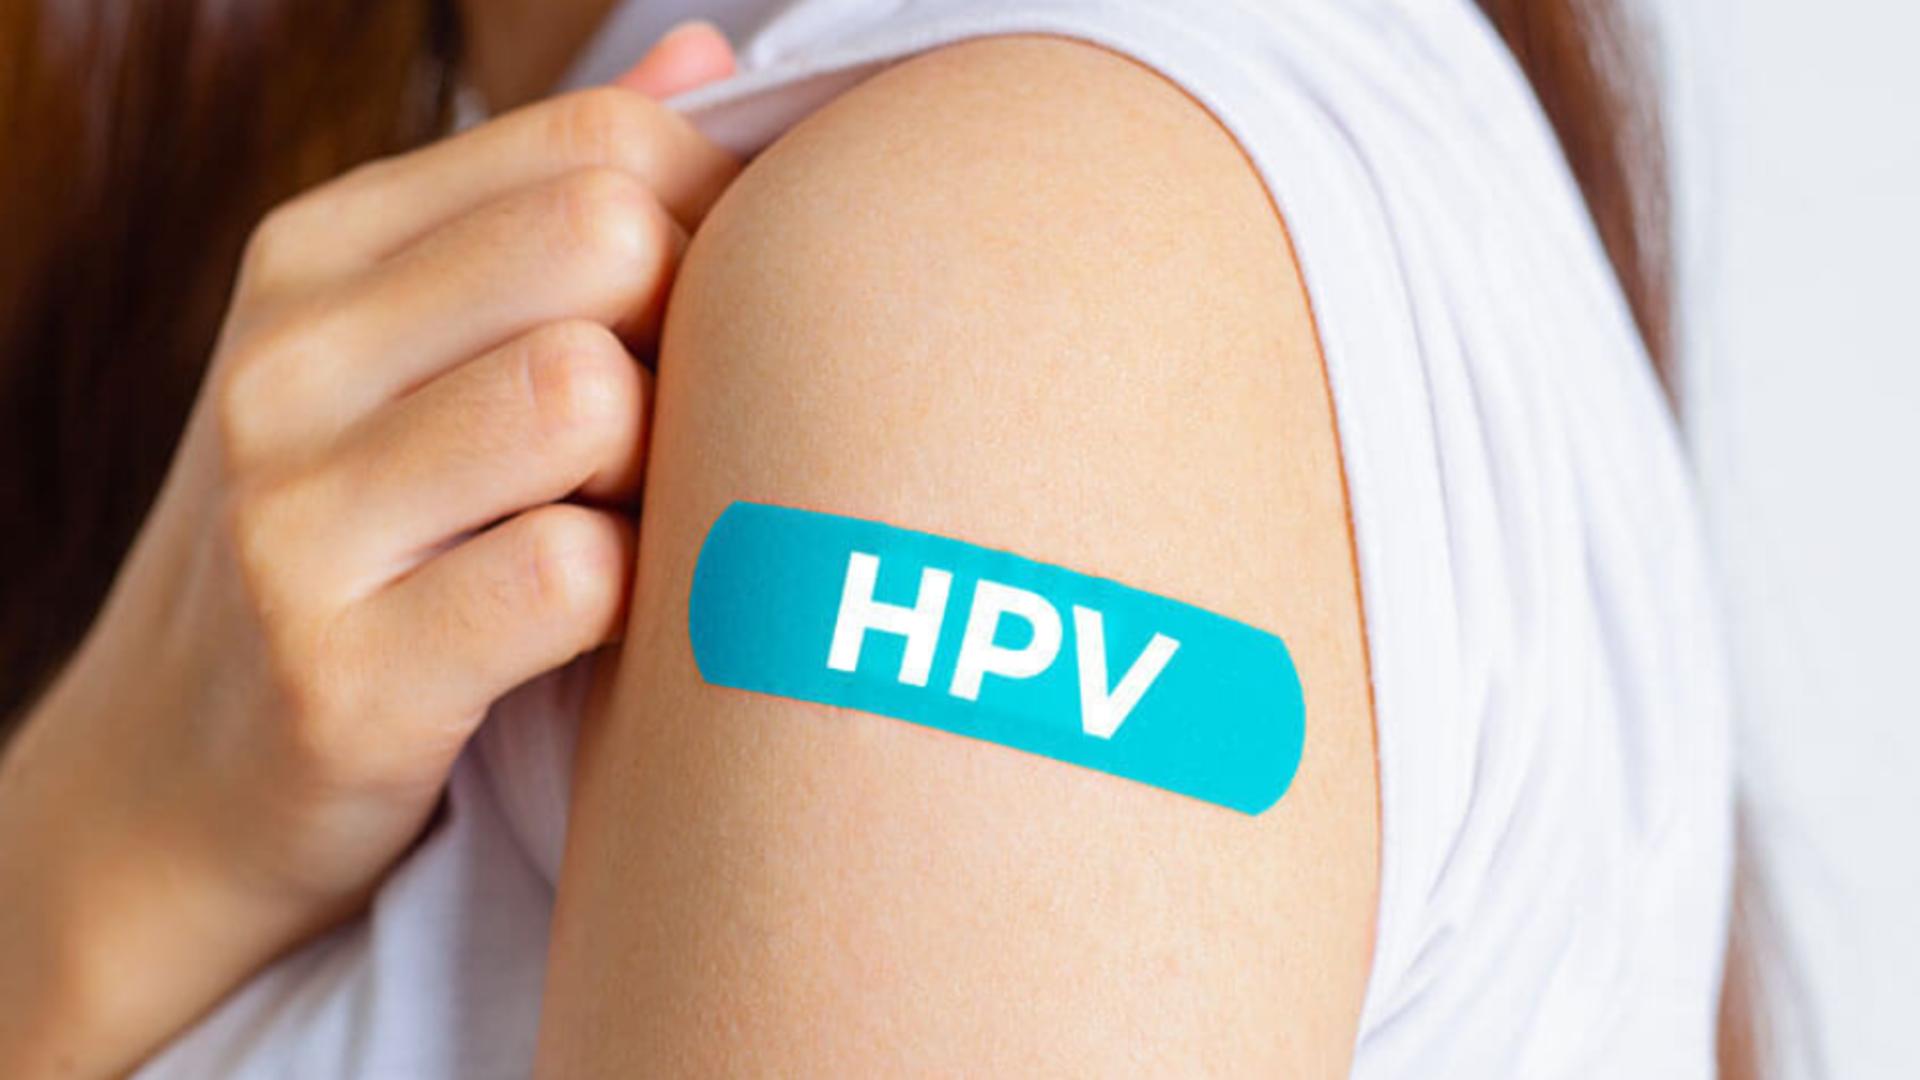 Premieră Vaccin HPV, gratuit la fete până la 18 ani: Va fi compensat pentru băieți și tinere peste 18 ani - Anunțul lui Rafila